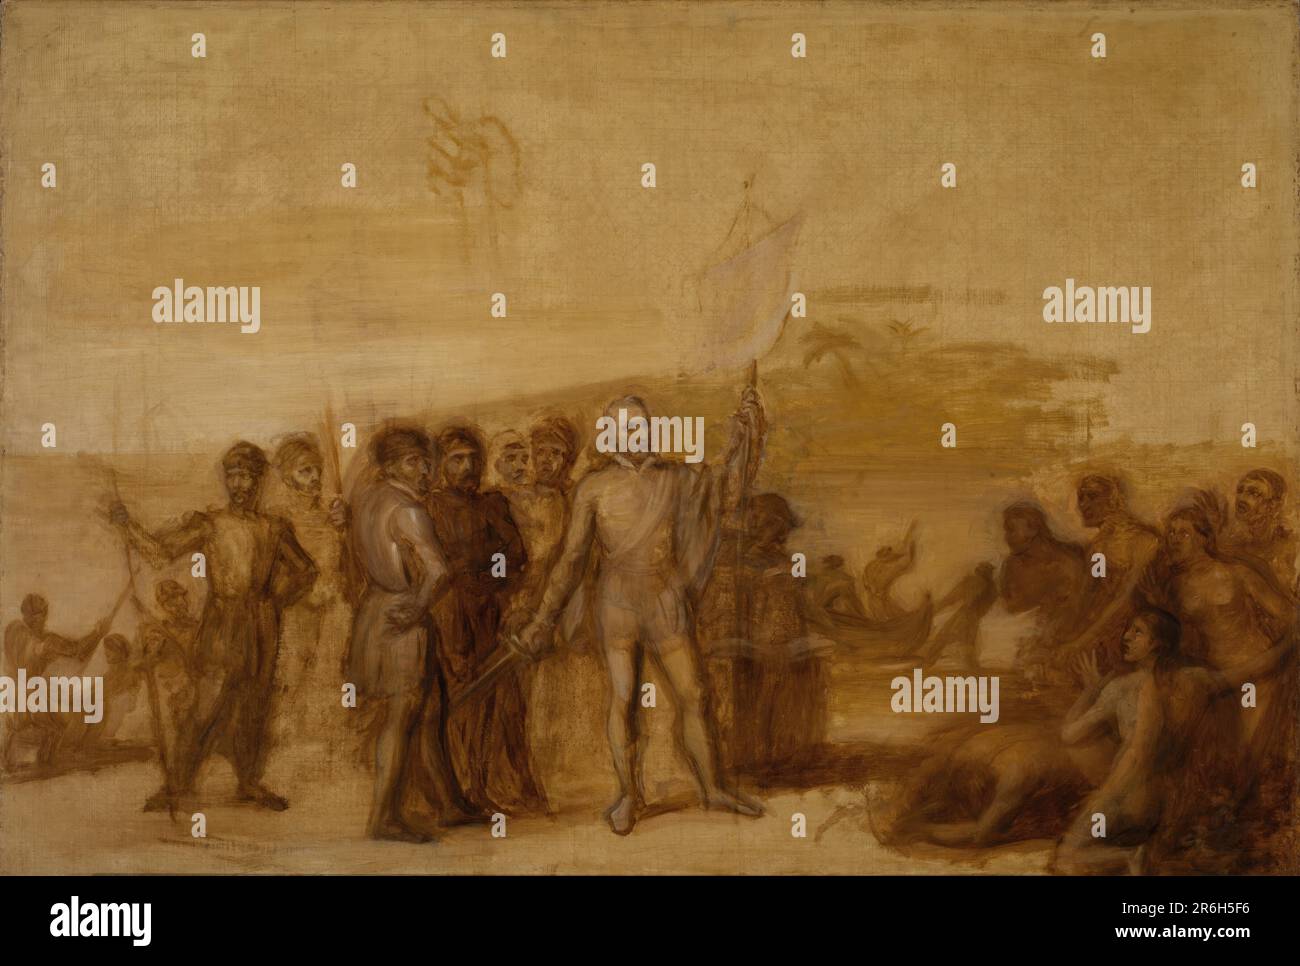 Le débarquement de Columbus. Date : env. 1840. huile sur toile. Musée: Smithsonian American Art Museum. Christophe Colomb. Banque D'Images